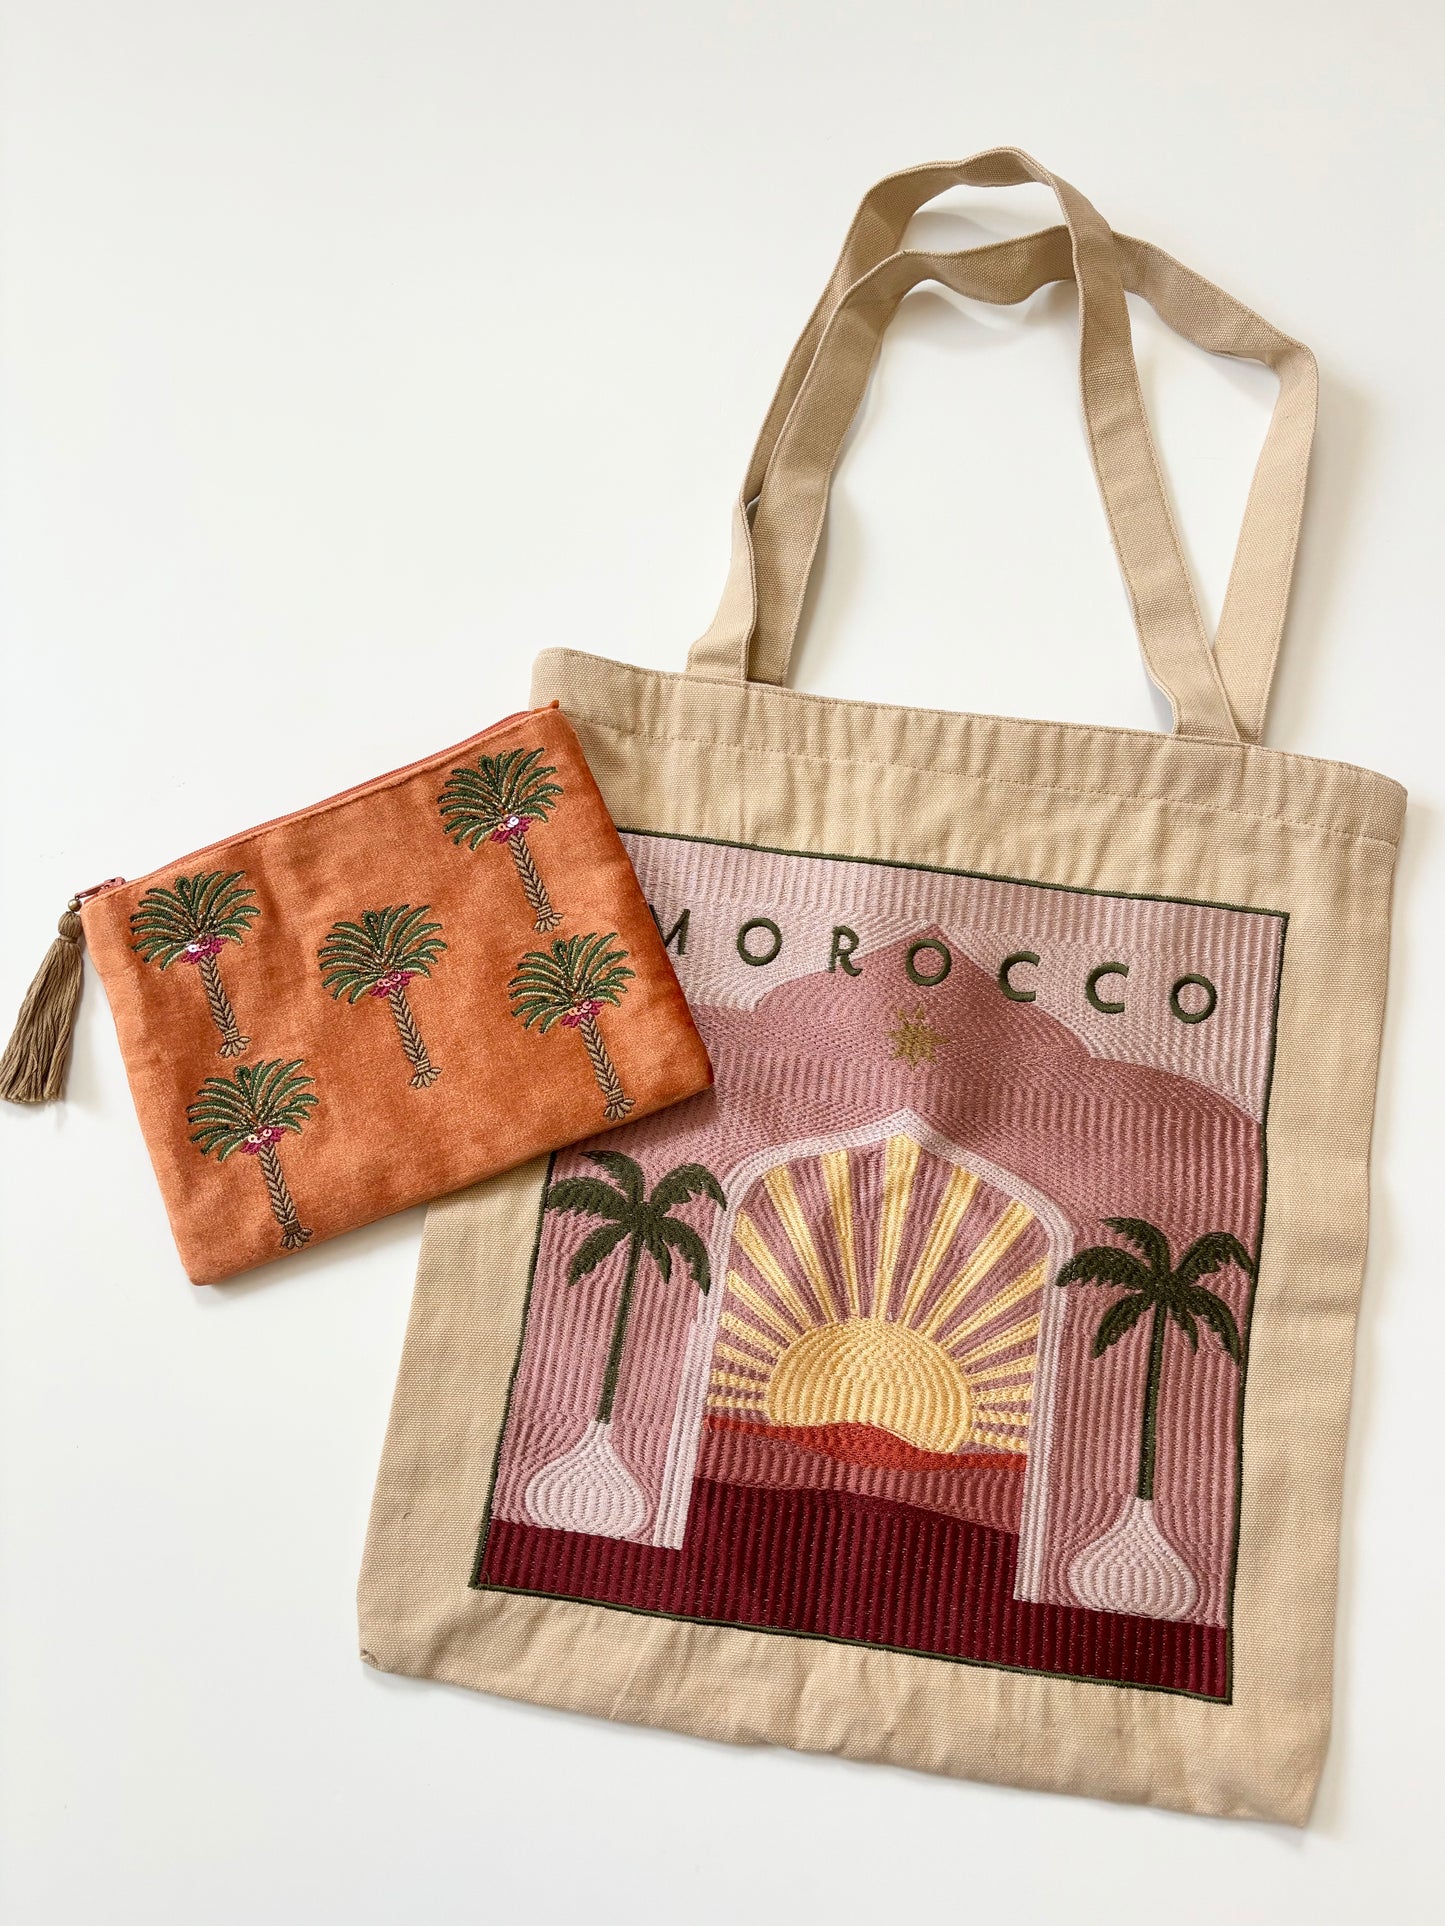 Morocco embroidered cotton bag